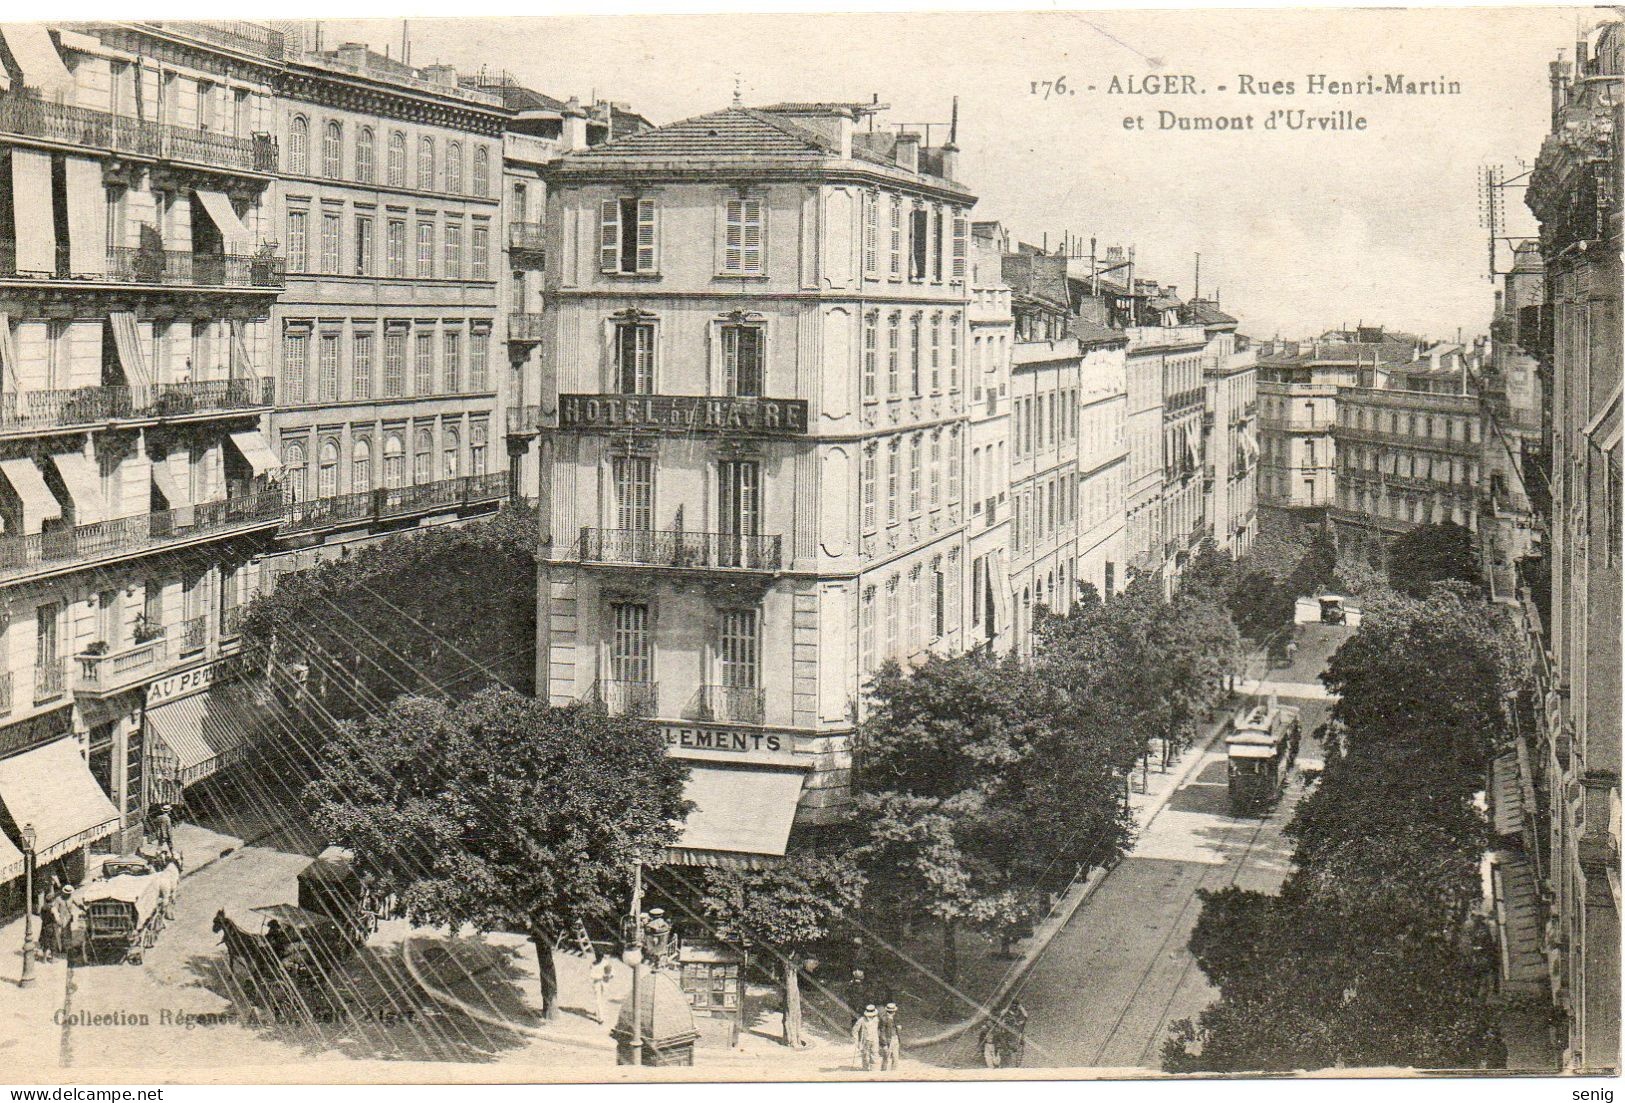 ALGERIE - ALGER - 176 - Rues Henri-Martin Et Dumont D'Urville - Collection Régence A. L. édit. Alger (Leroux) - - Algerien